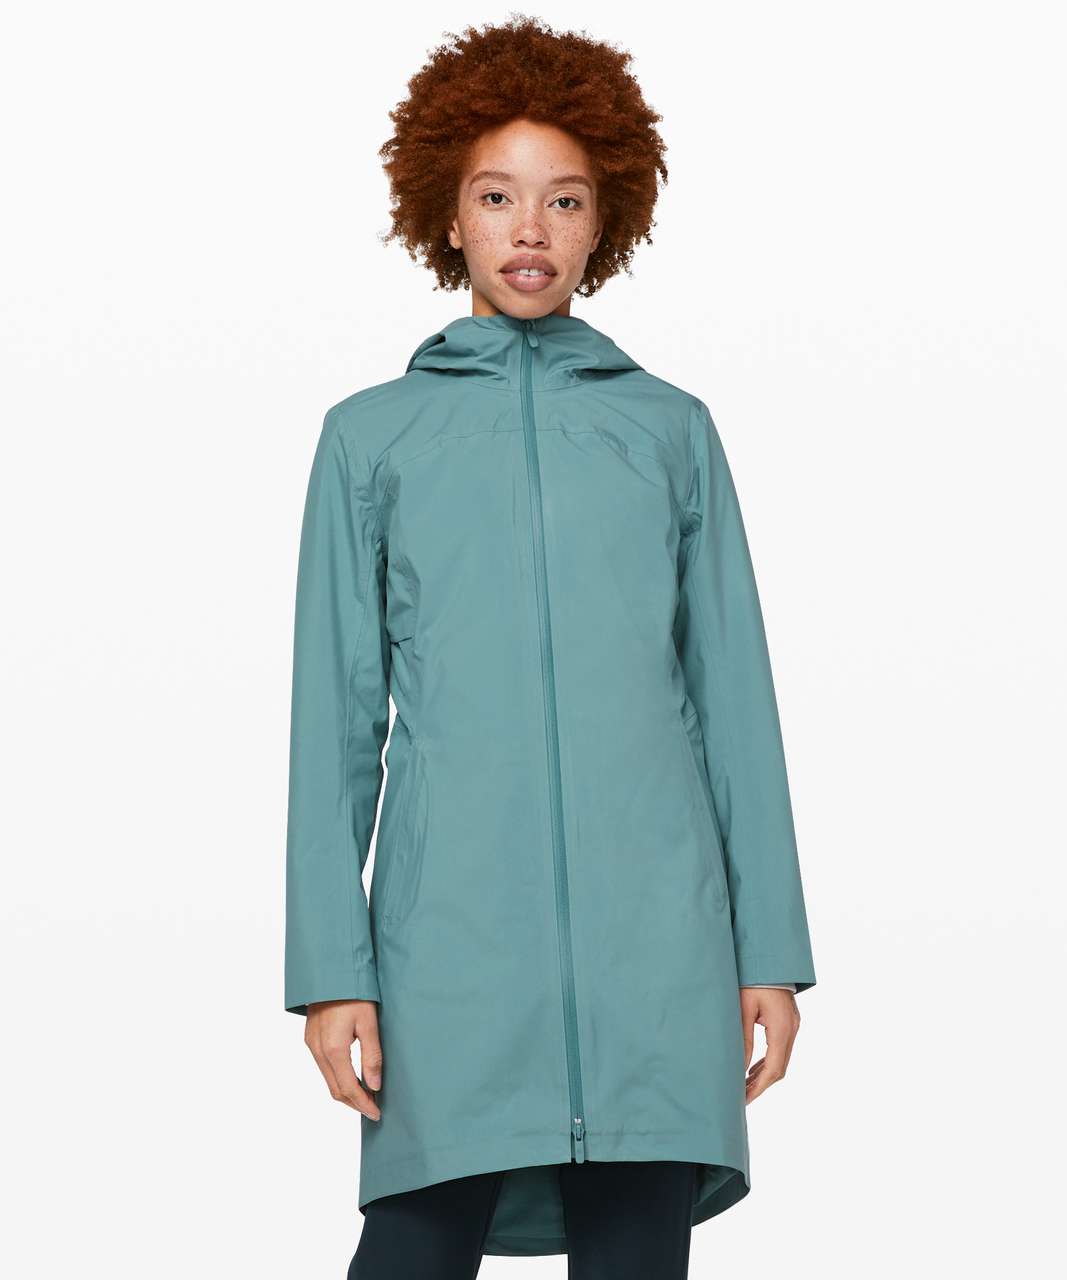 rain rebel jacket lululemon